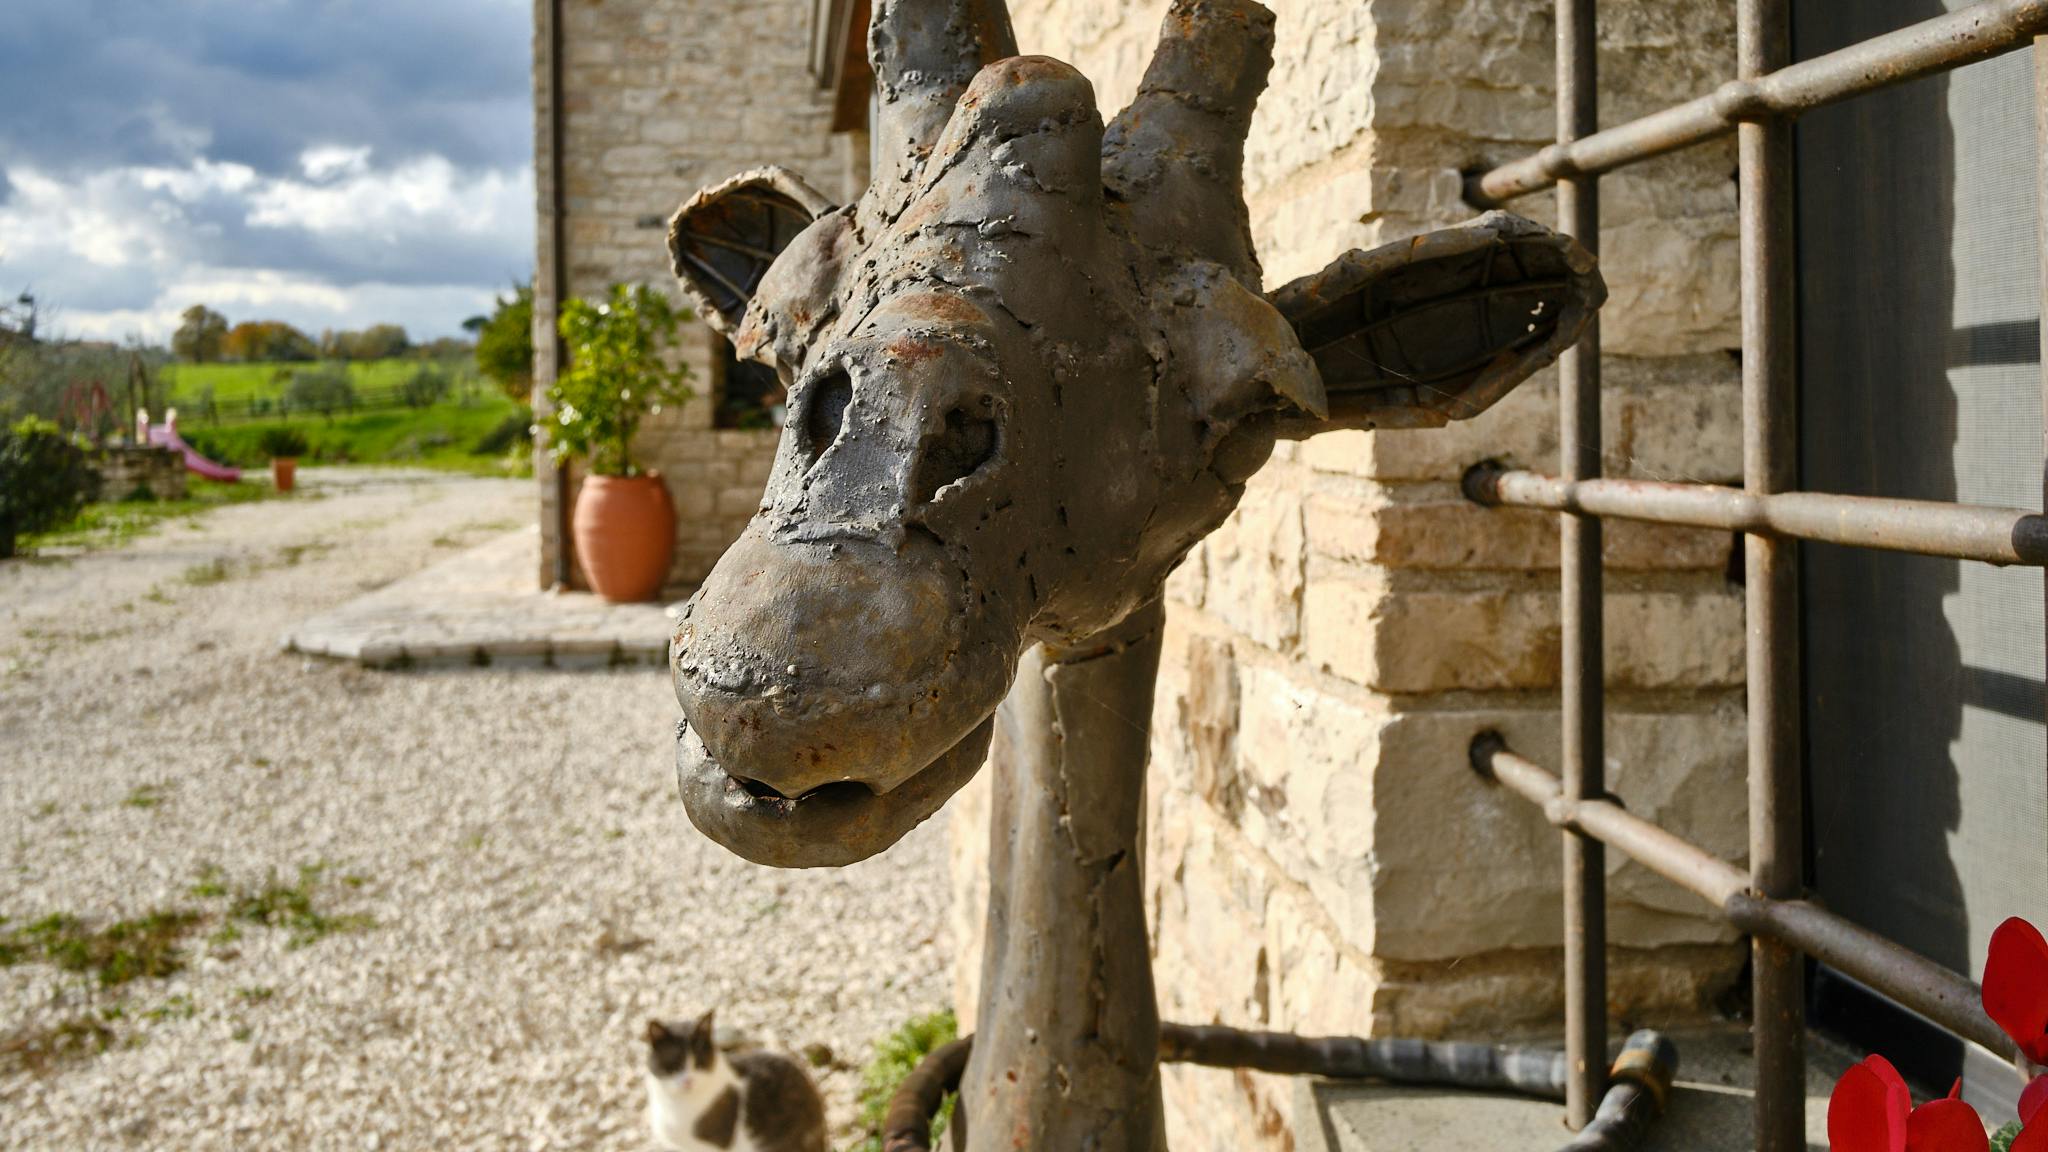 Esta jirafa de hierro de Kenia se encuentra fuera del chalet rural de Tenuta le Pietre.